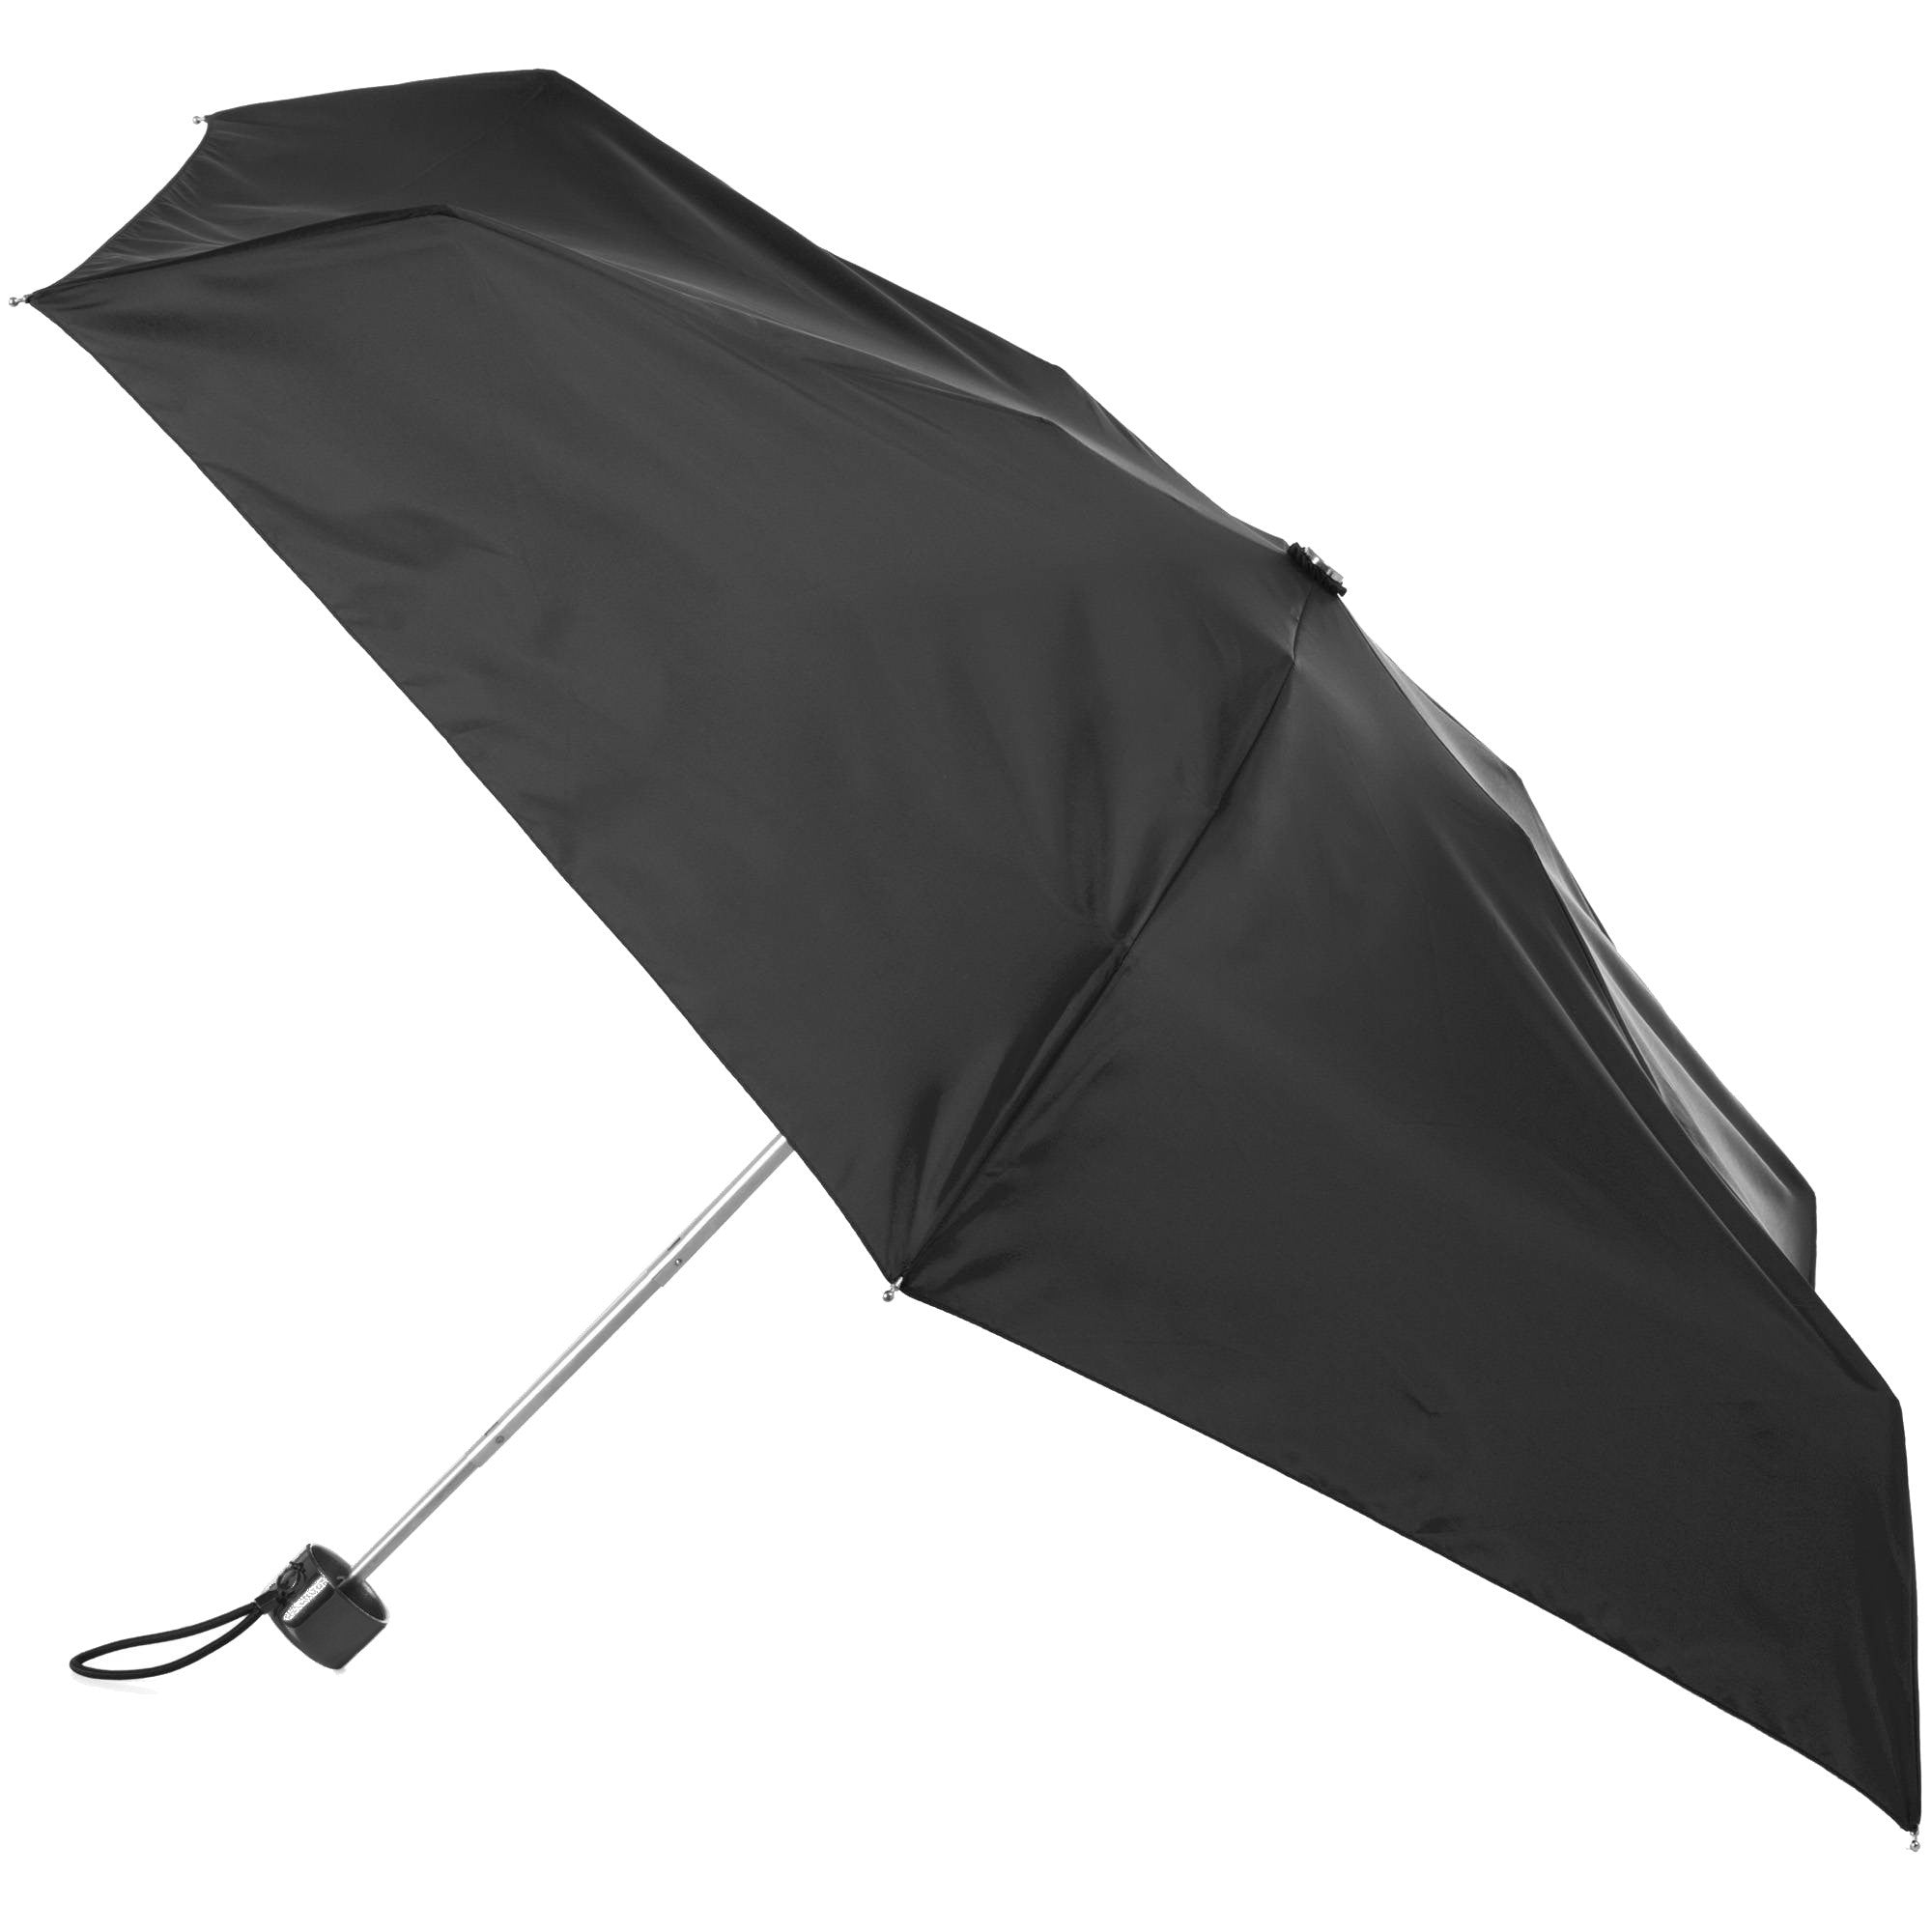 Totes Mini Never Wet Umbrella – ASSORTED COLORS